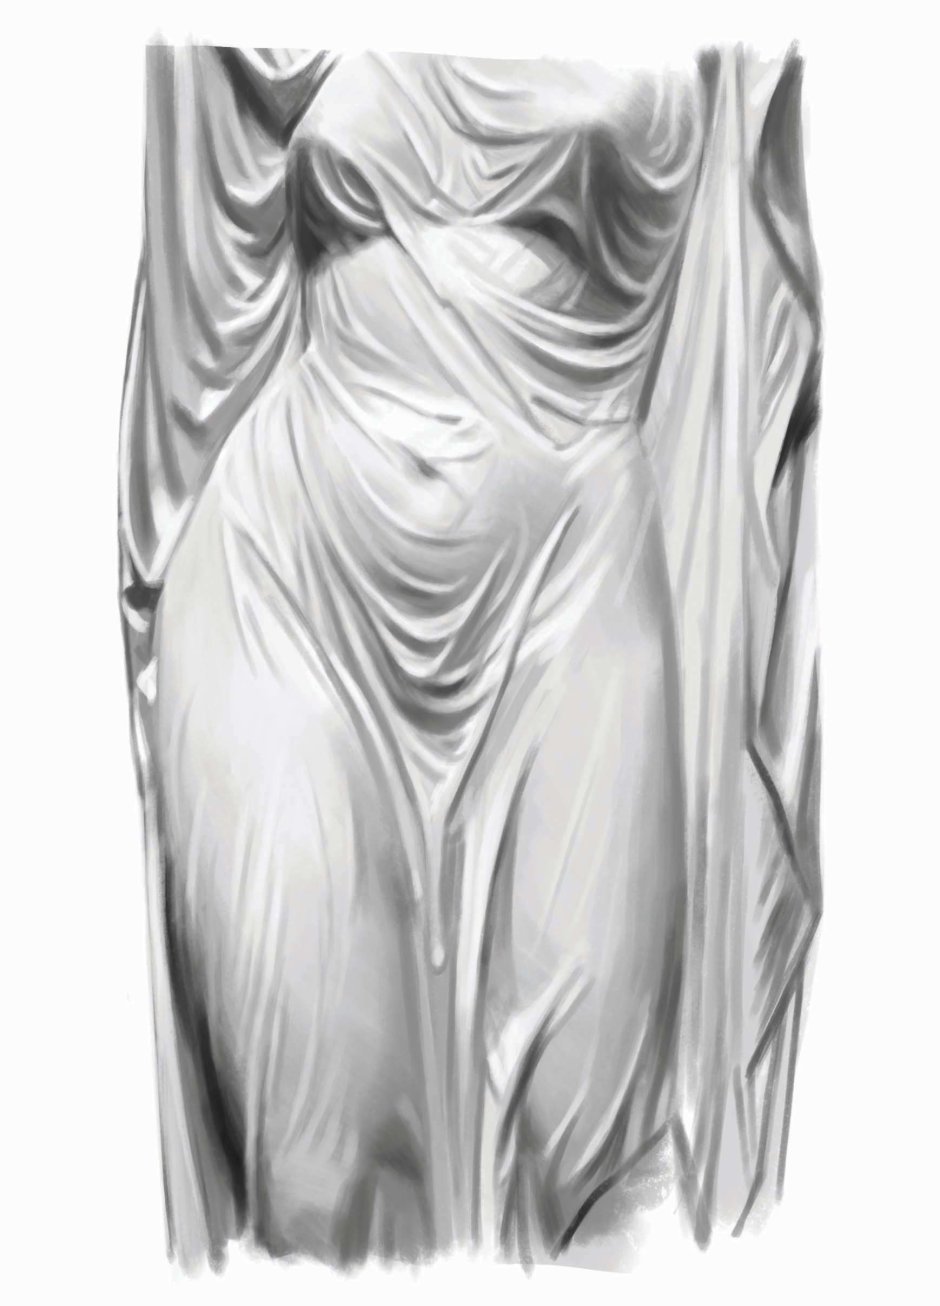 Джованни Страцца Дева Мария скульптура